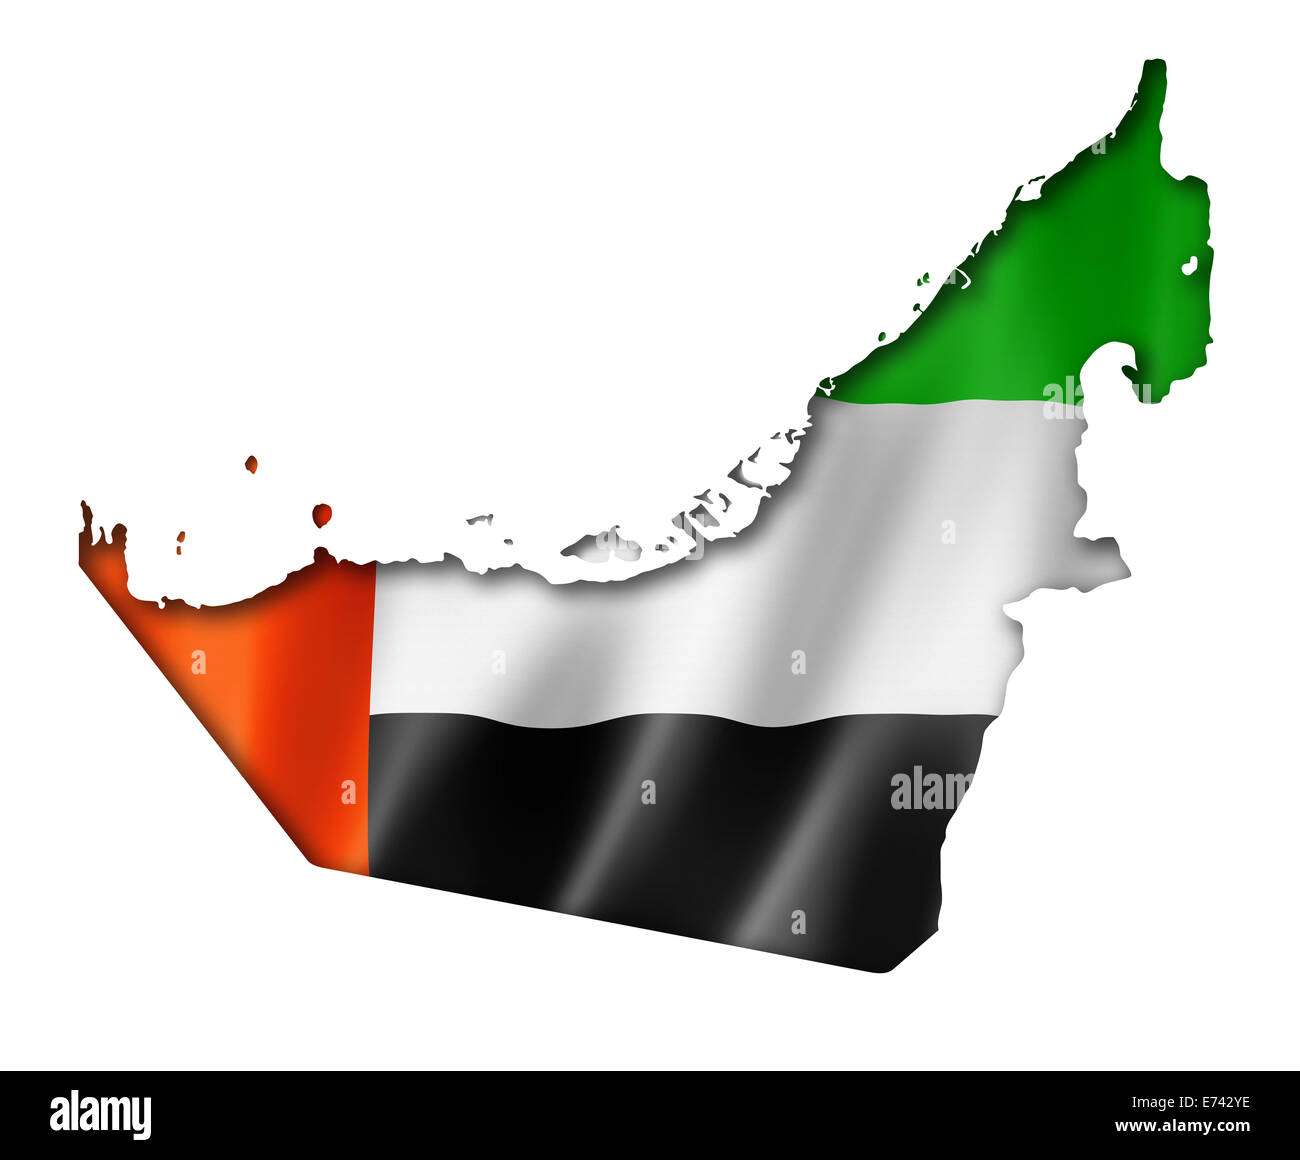 Emirats Arabes Unis carte drapeau, rendu en trois dimensions, isolated on white Banque D'Images